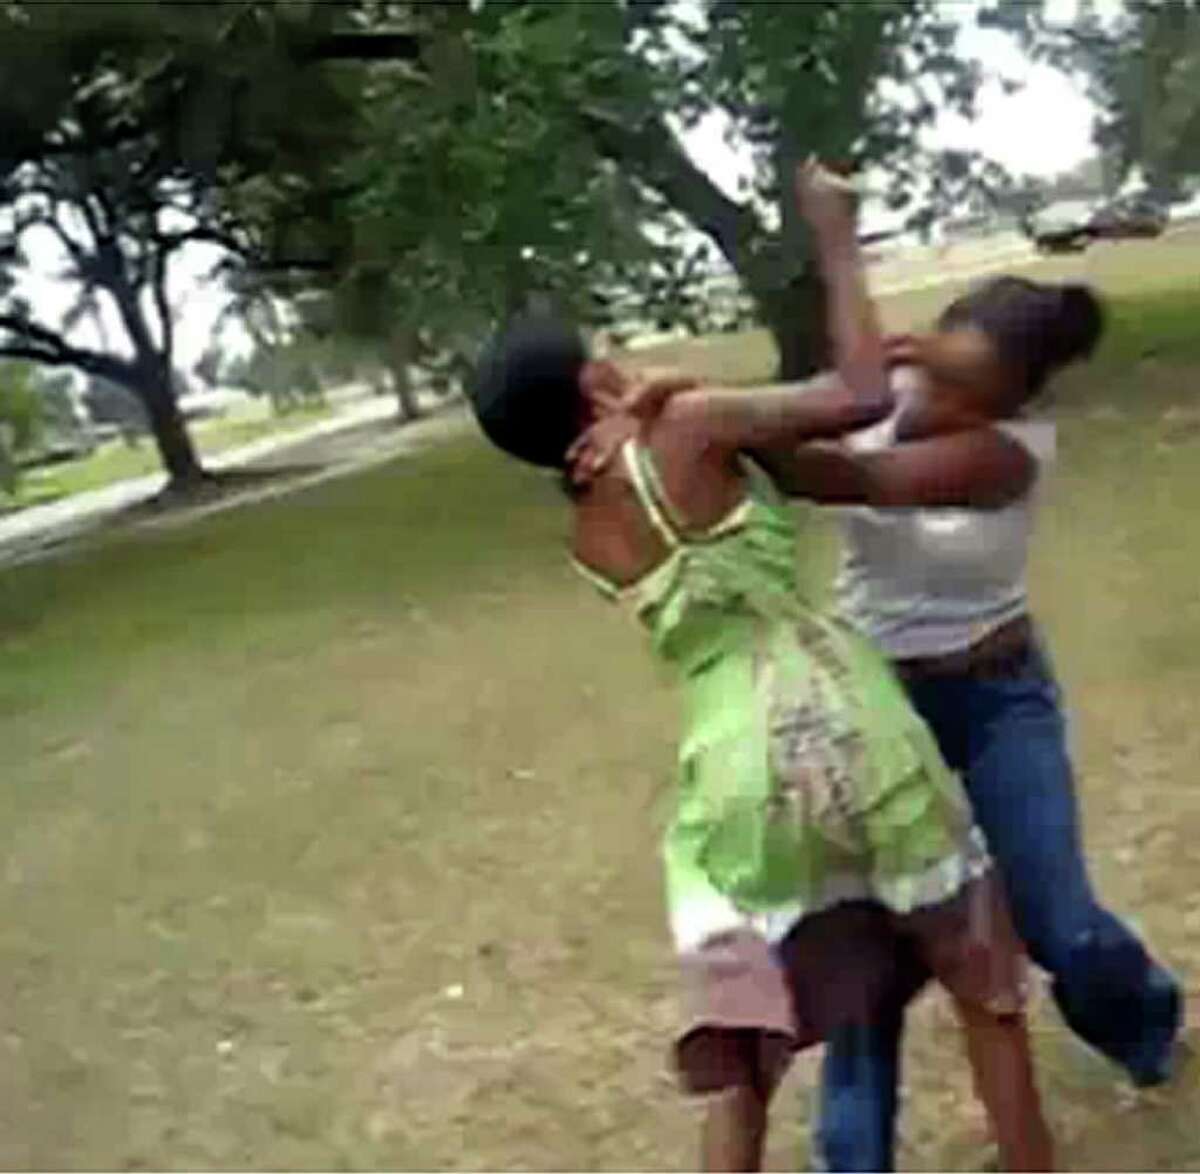 Ebony women fighting nude